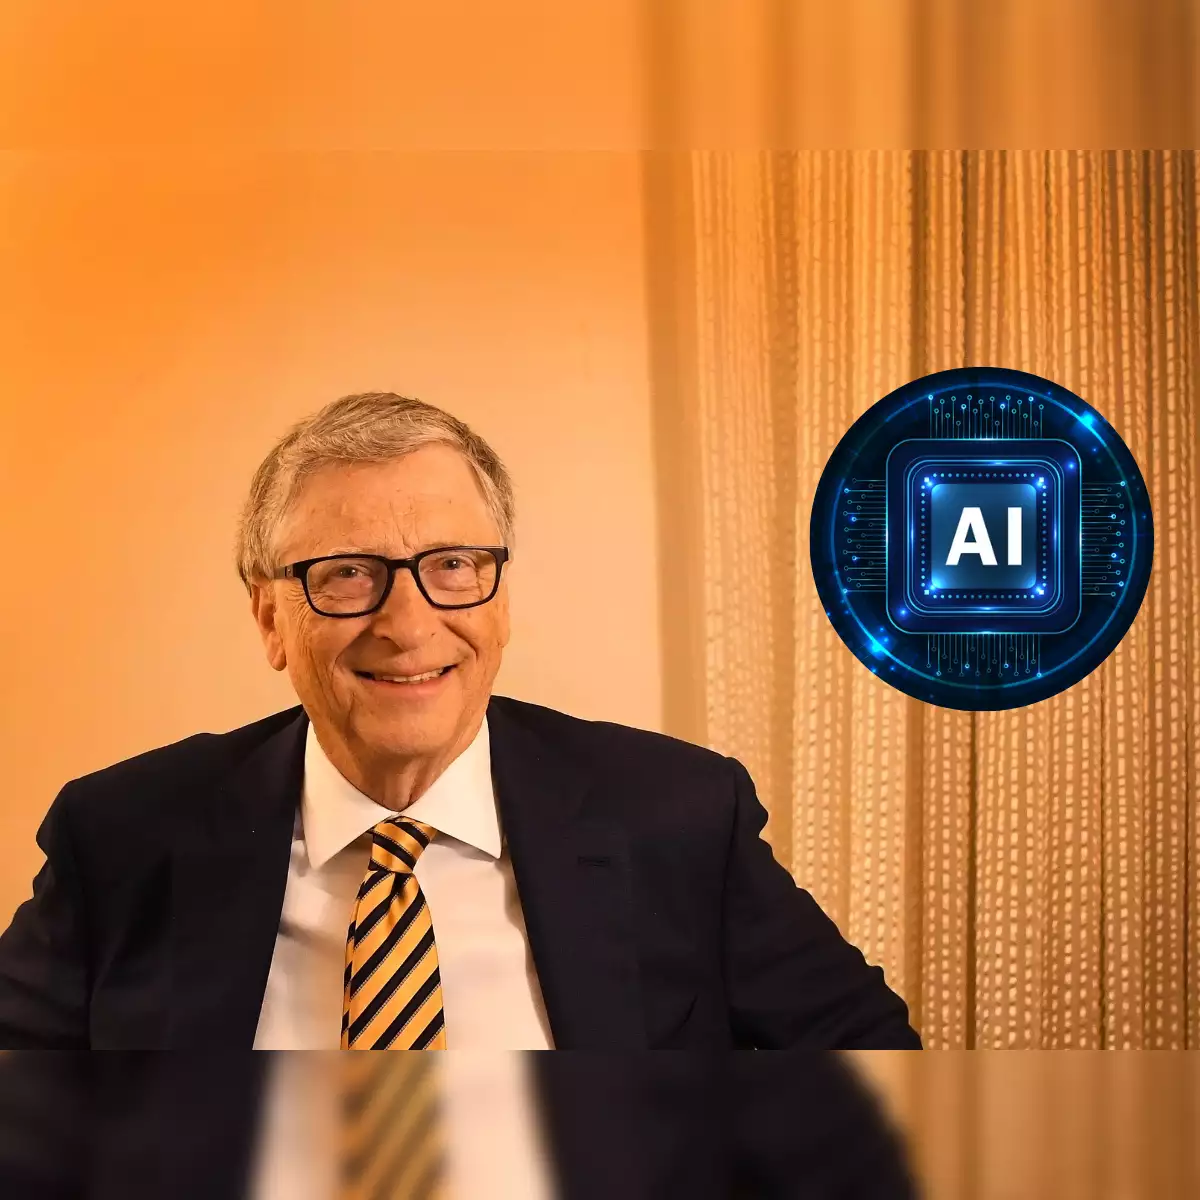 Bill Gates dự đoán con người sẽ làm việc chỉ 3 ngày 1 tuần nhờ trí tuệ nhân tạo (AI) - Bill Gates